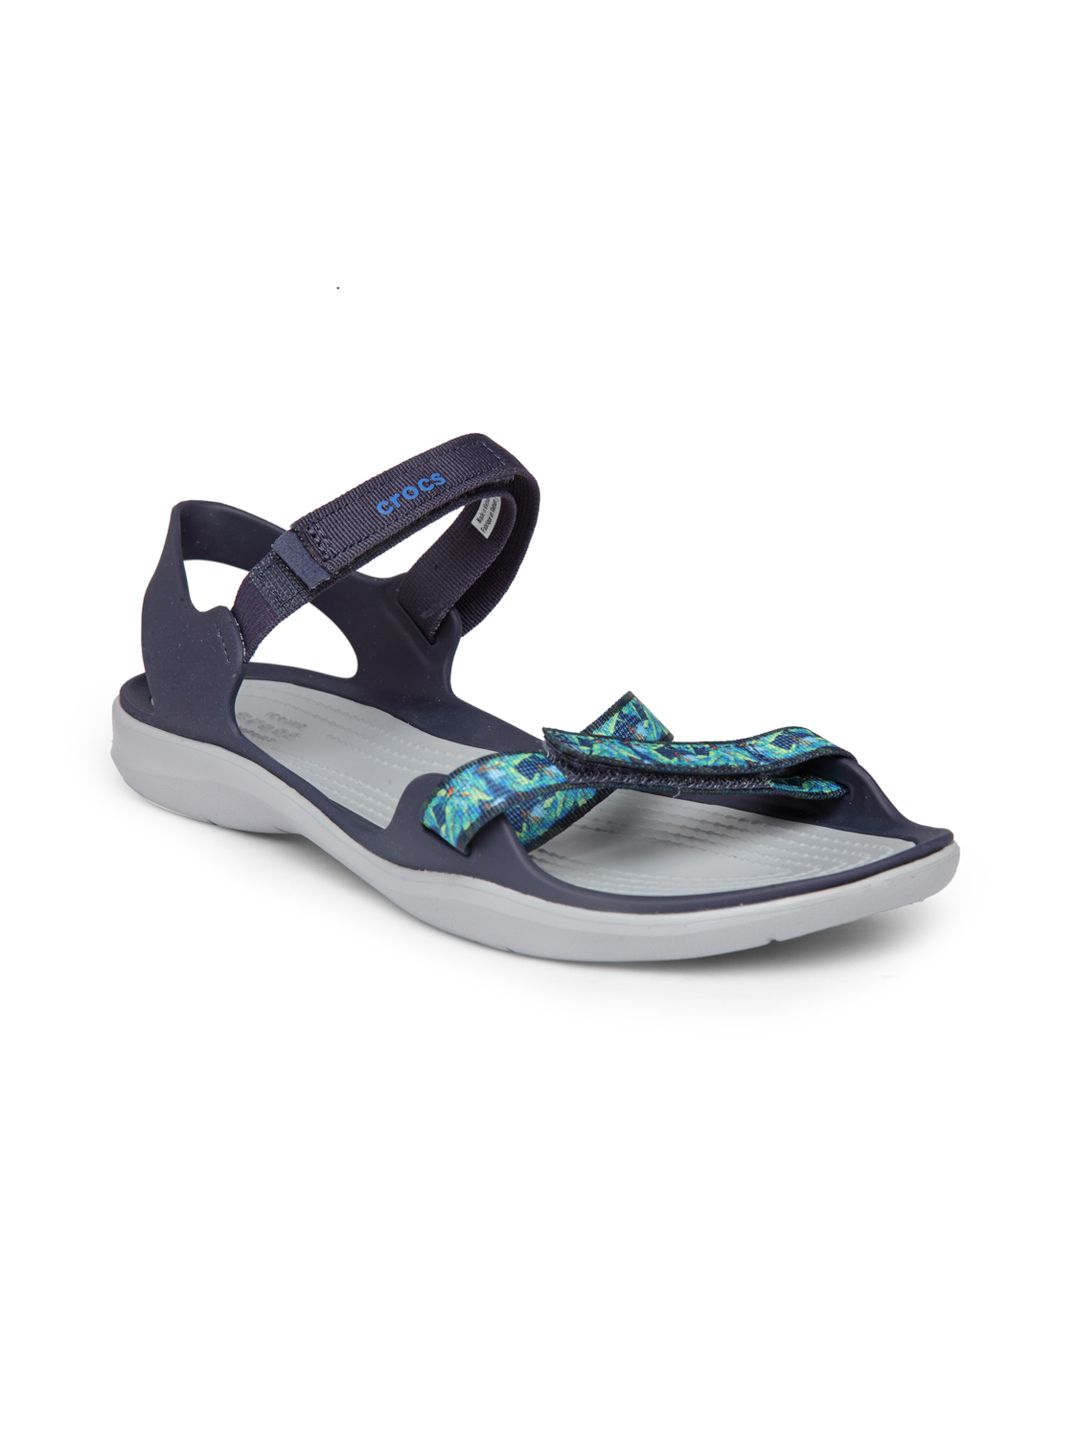 Crocs Swiftwater  Women Blue Comfort Sandals Price in India